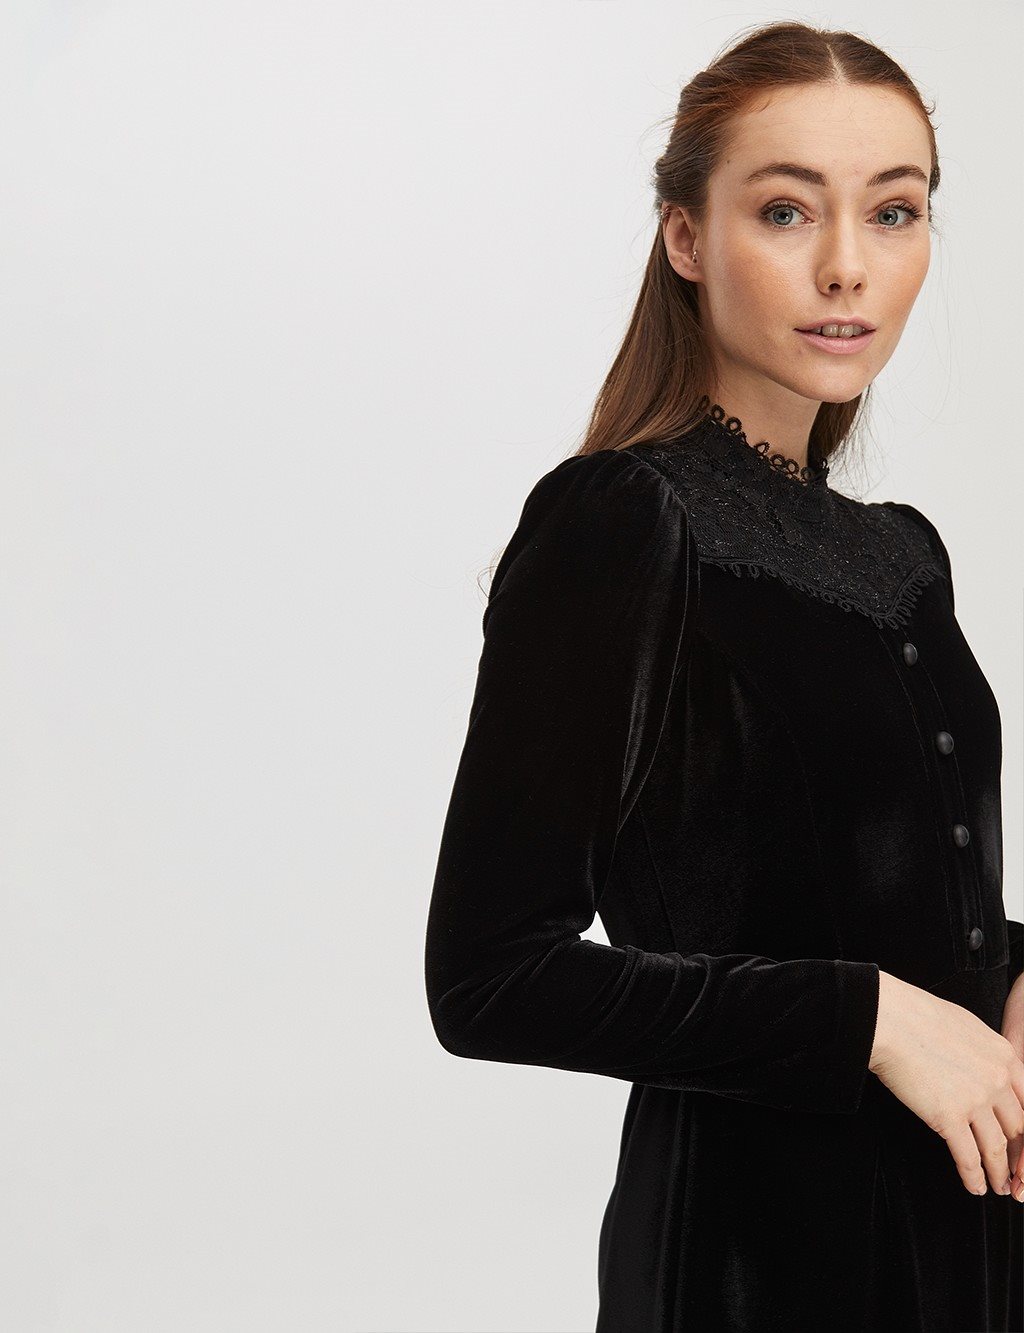 Guipure Full Length Velvet Dress Black